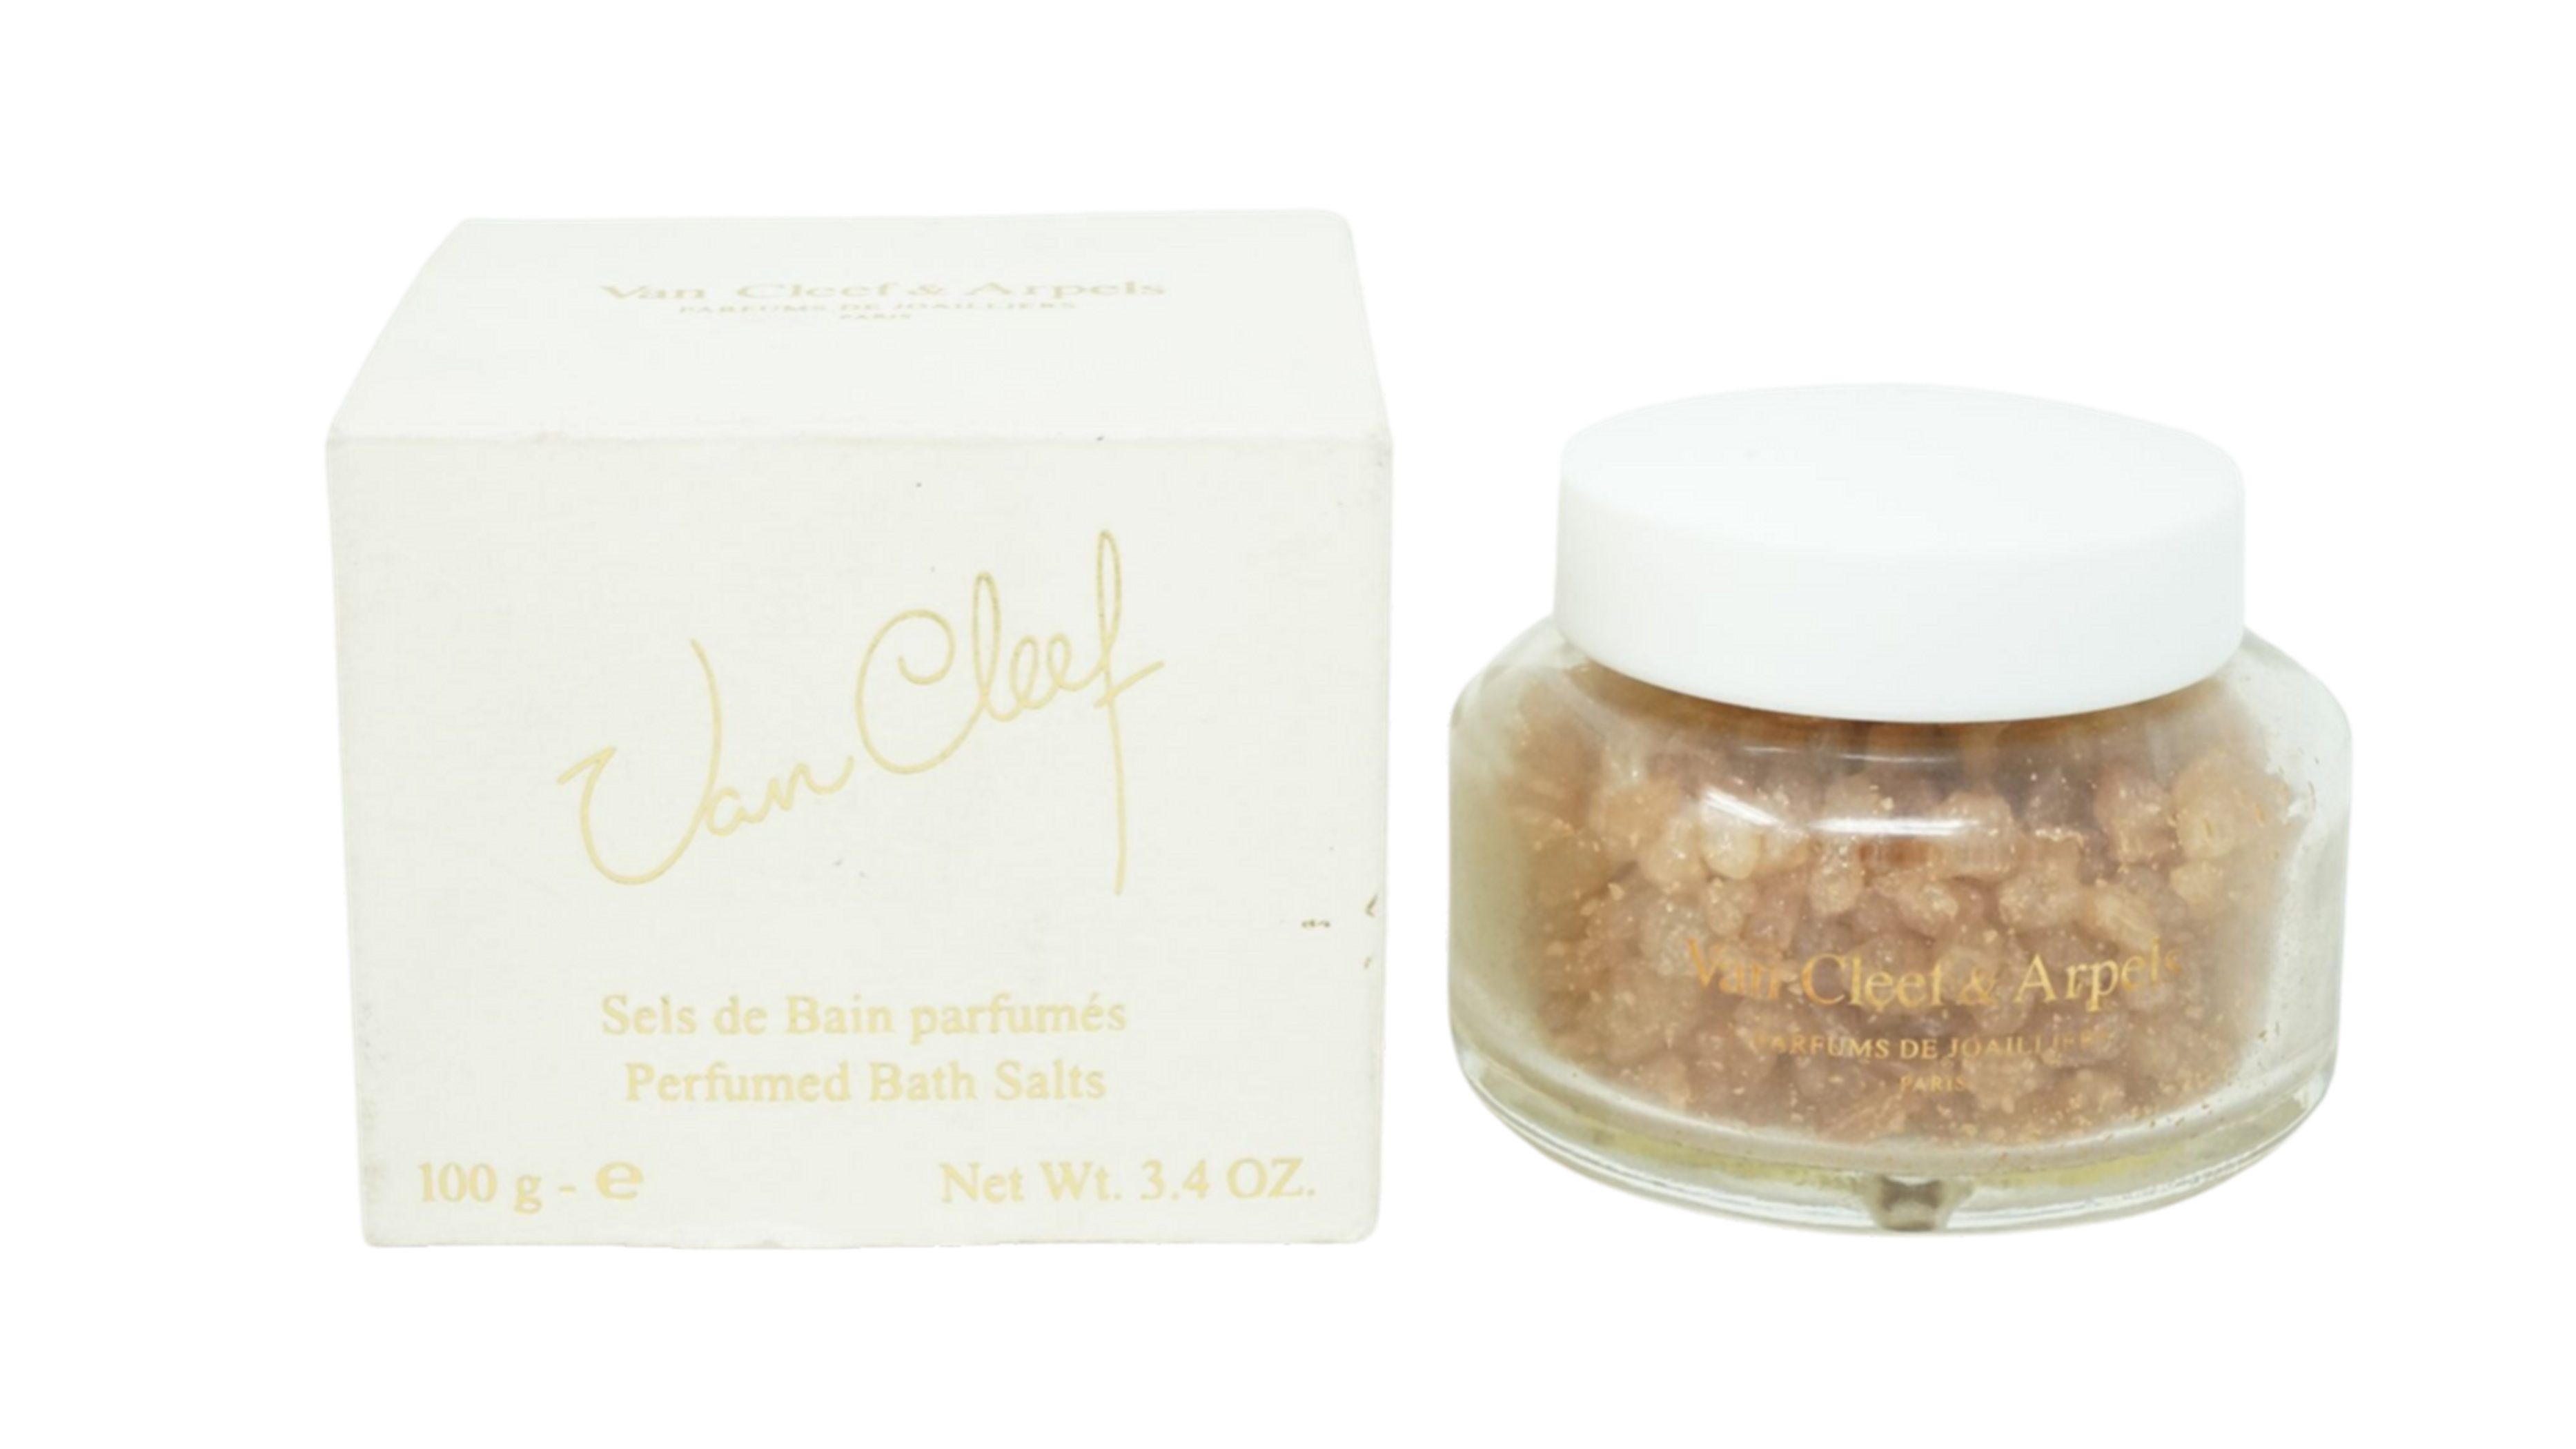 Van Cleef & Arpels Badesalz Van Cleef & Arpels Prefumed Bath Salts 100g